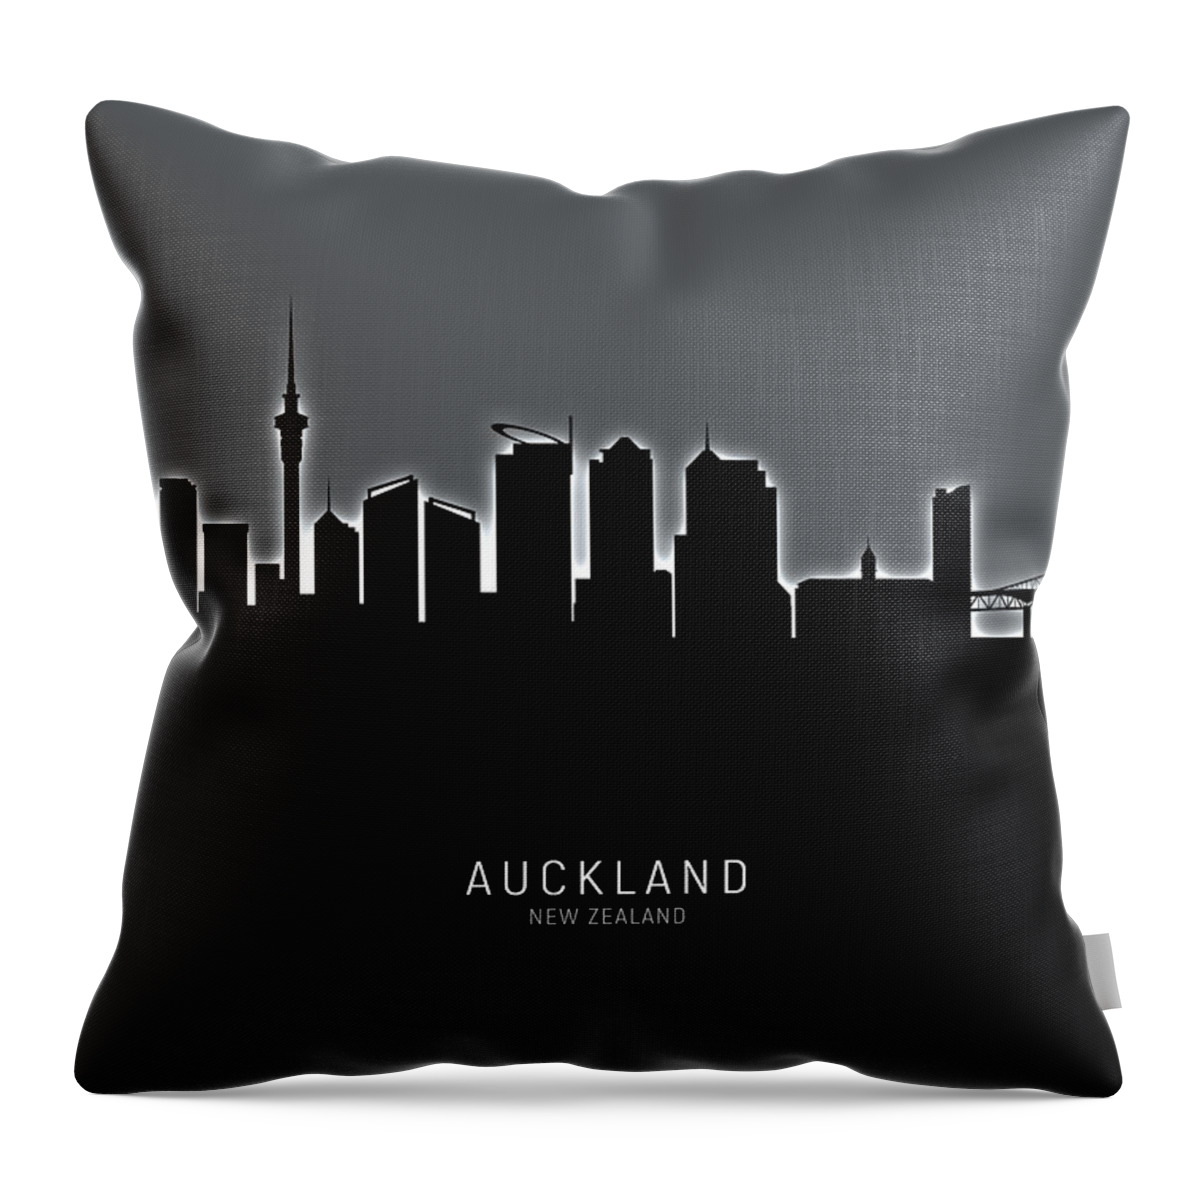 Auckland Throw Pillow featuring the digital art Auckland New Zealand Skyline #26 by Michael Tompsett